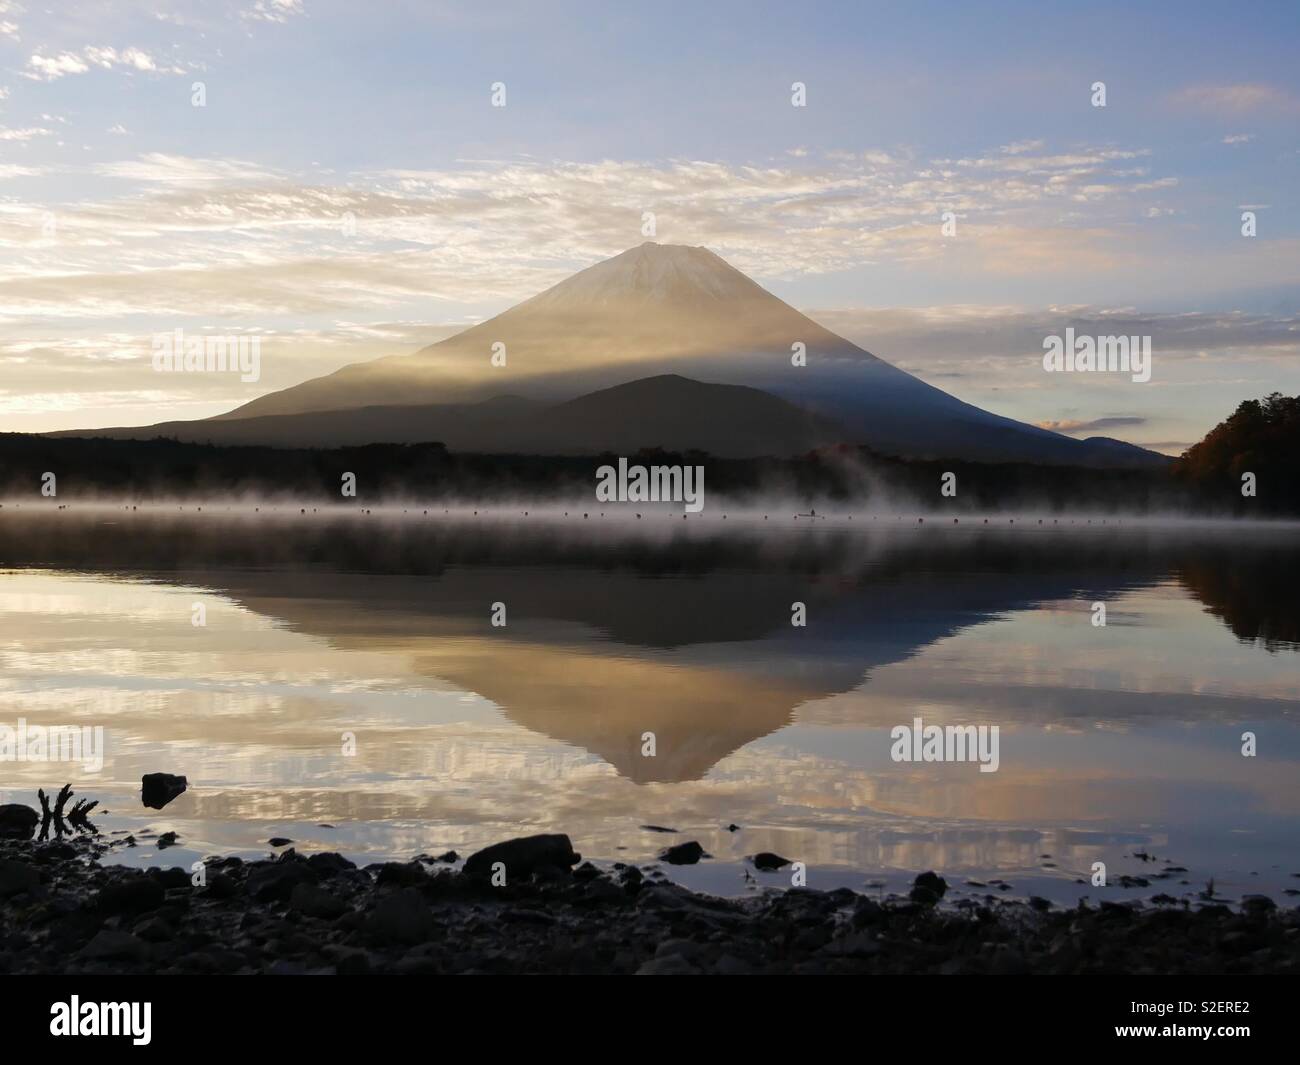 Le mont Fuji au lever du soleil se reflétant dans les eaux du lac Shoji en automne Banque D'Images